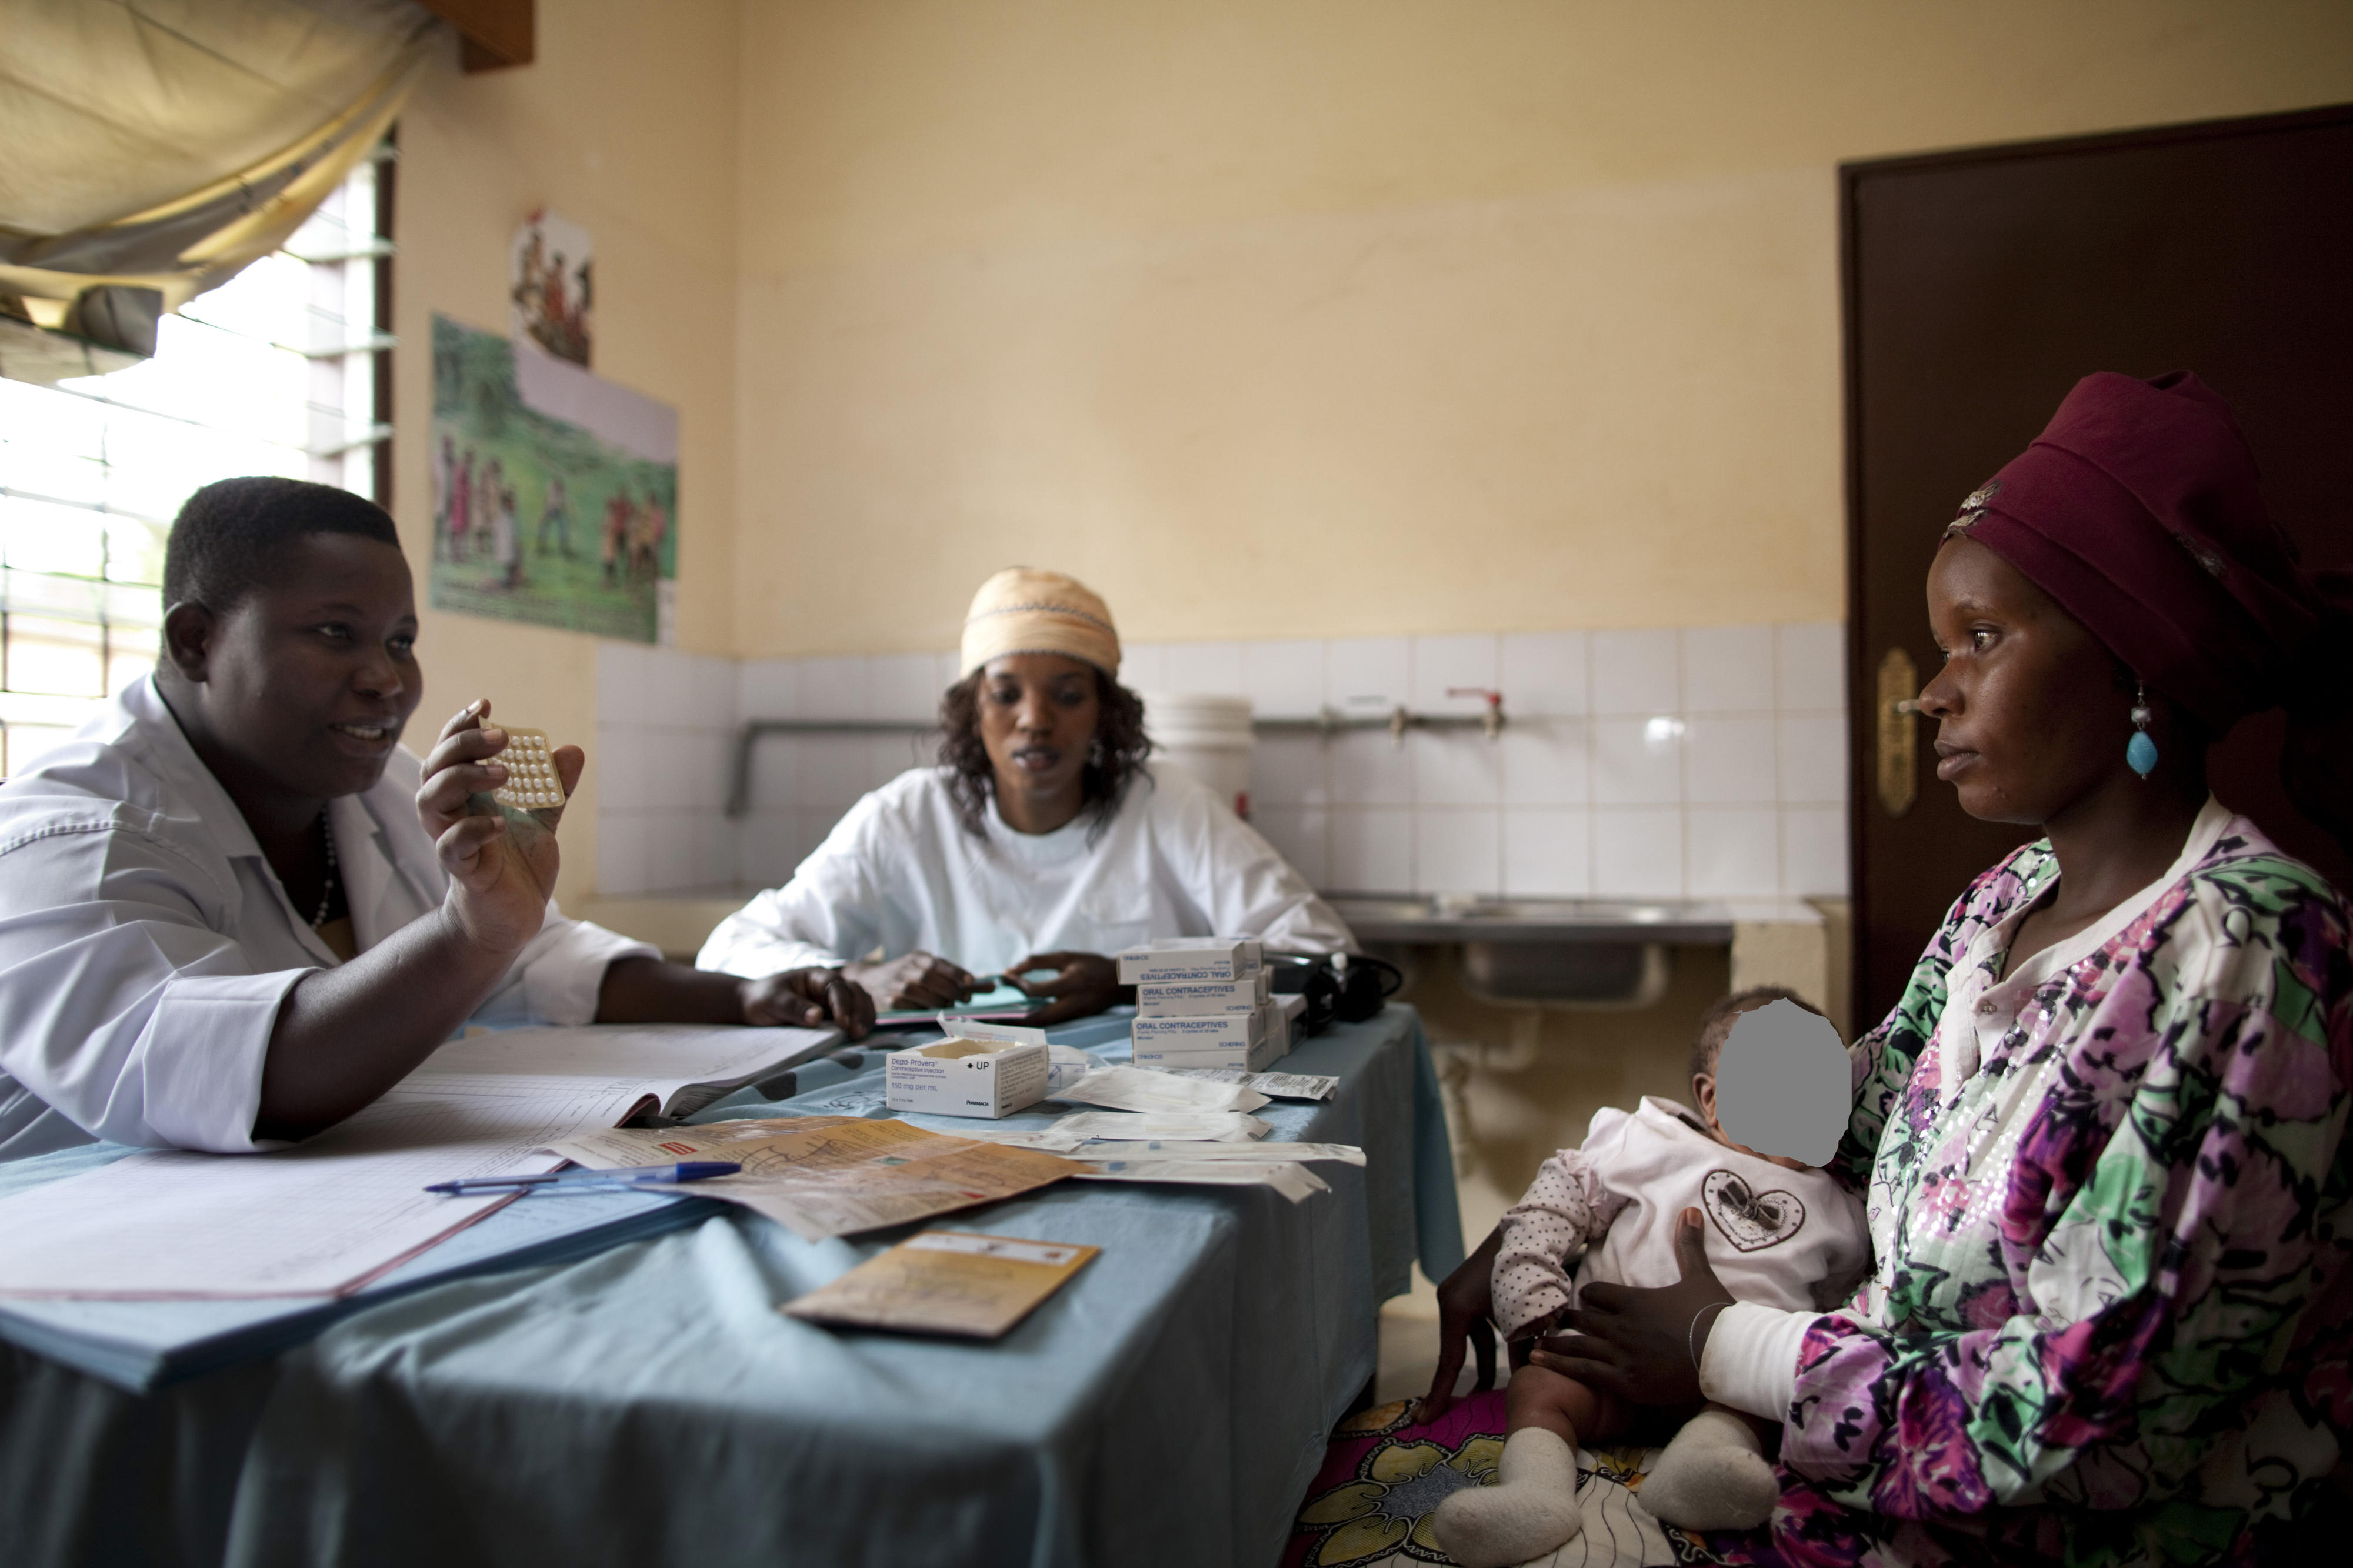 Beratung zum Thema Verhütungsmittel in einer Gesundheitsstation in Bujumbura, Burundi. Eine Frau mit einem Kind auf dem Schoß sitzt am Tisch. Ihr gegenüber sitzt eine Beraterin in einem weißen Kittel und zeigt ihr eine Tablettenpackung.